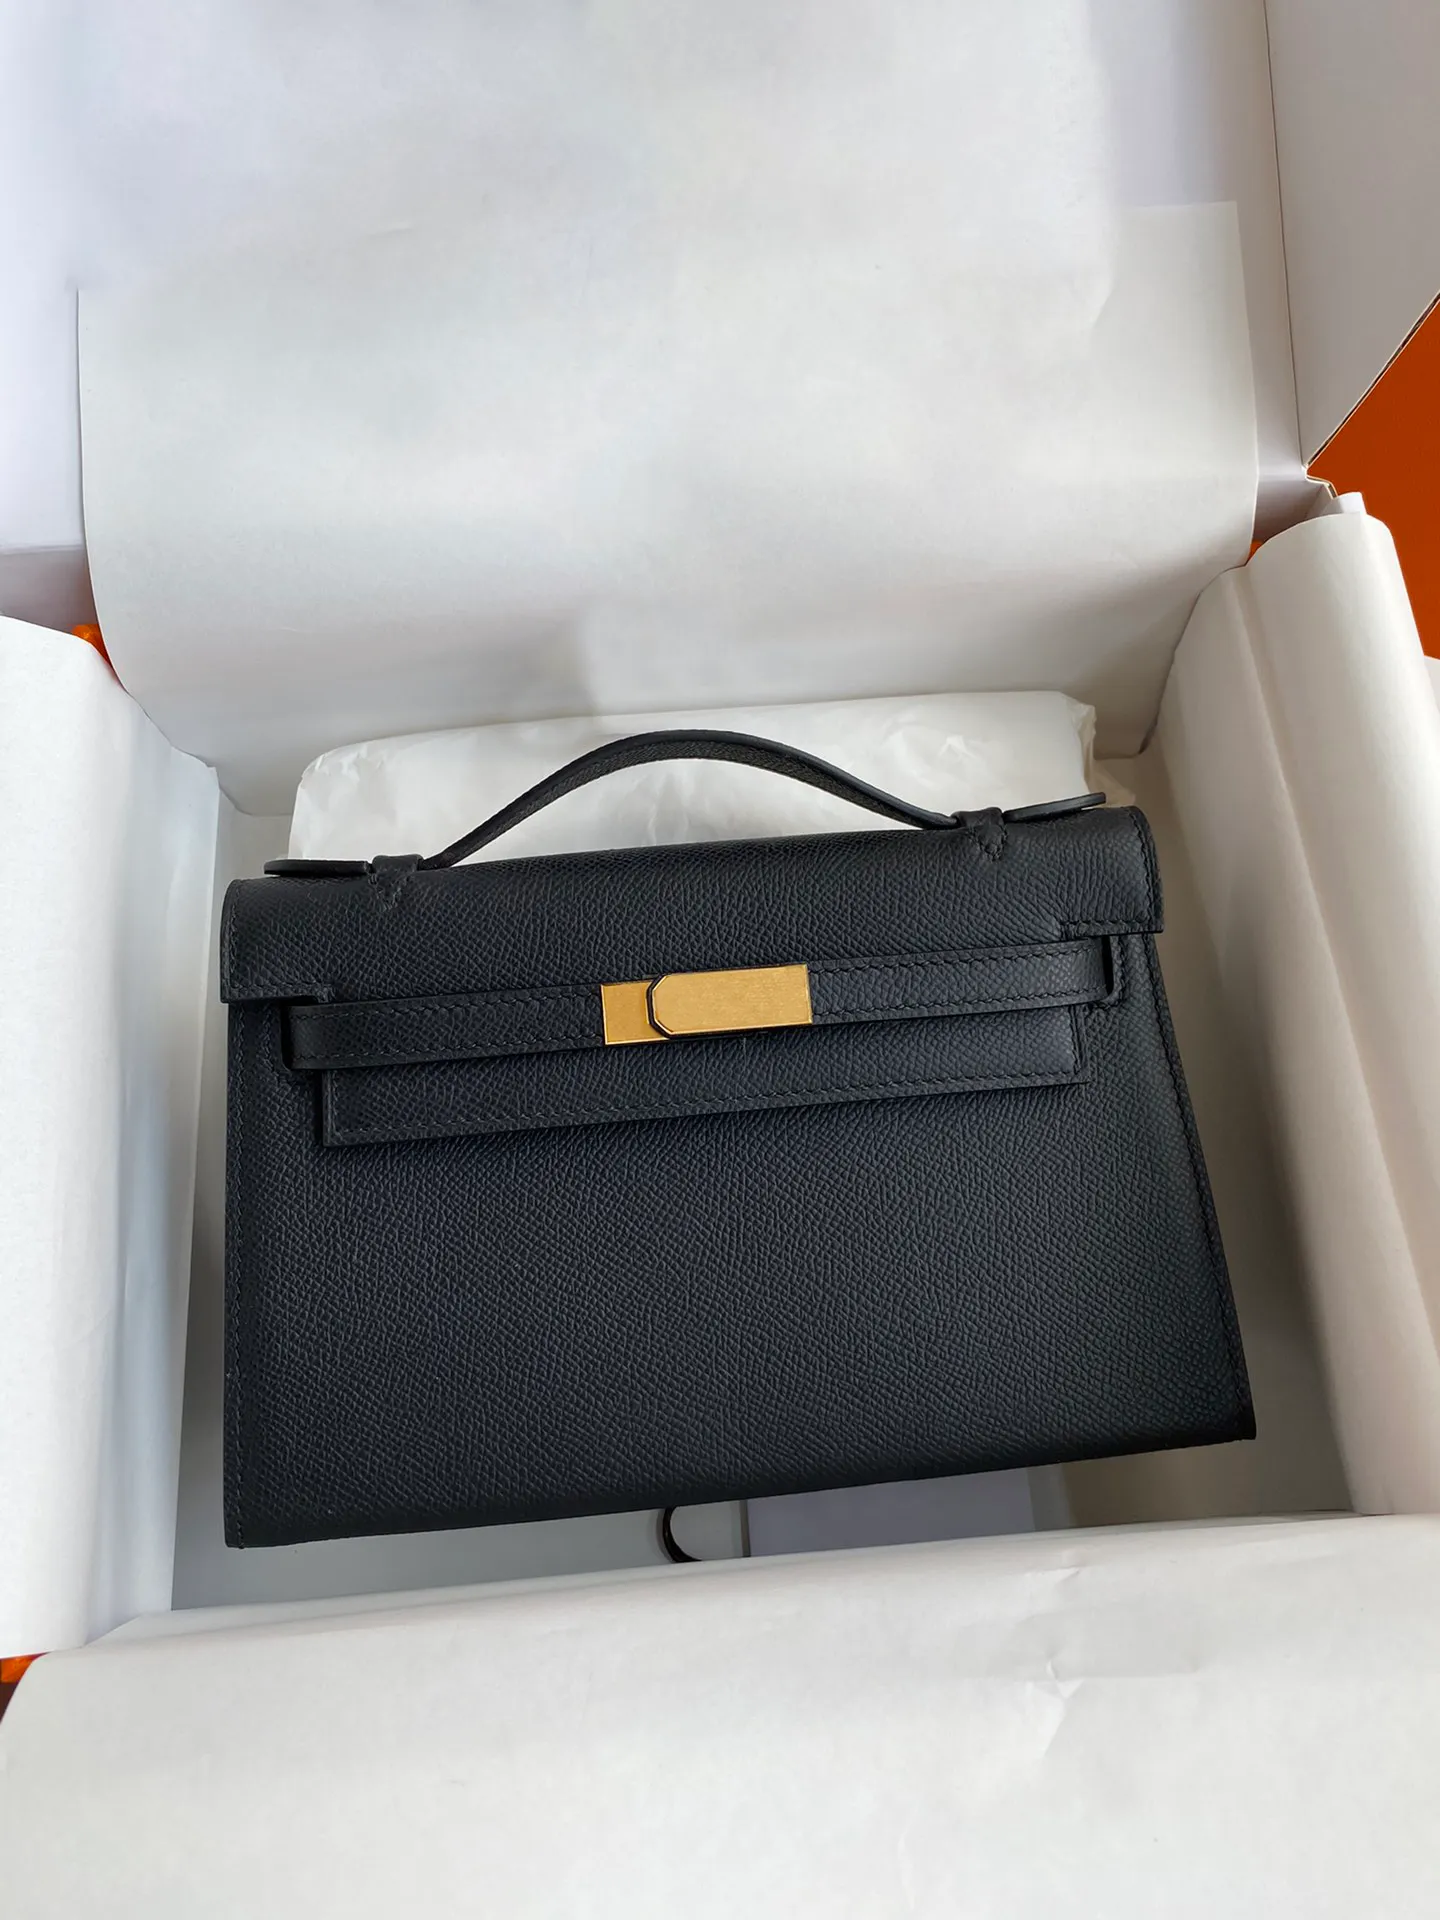 10A Высочайшее качество, женские клатчи ручной работы, дизайнерская кожаная сумка Epsom, 22 см, брендовая полная упаковка